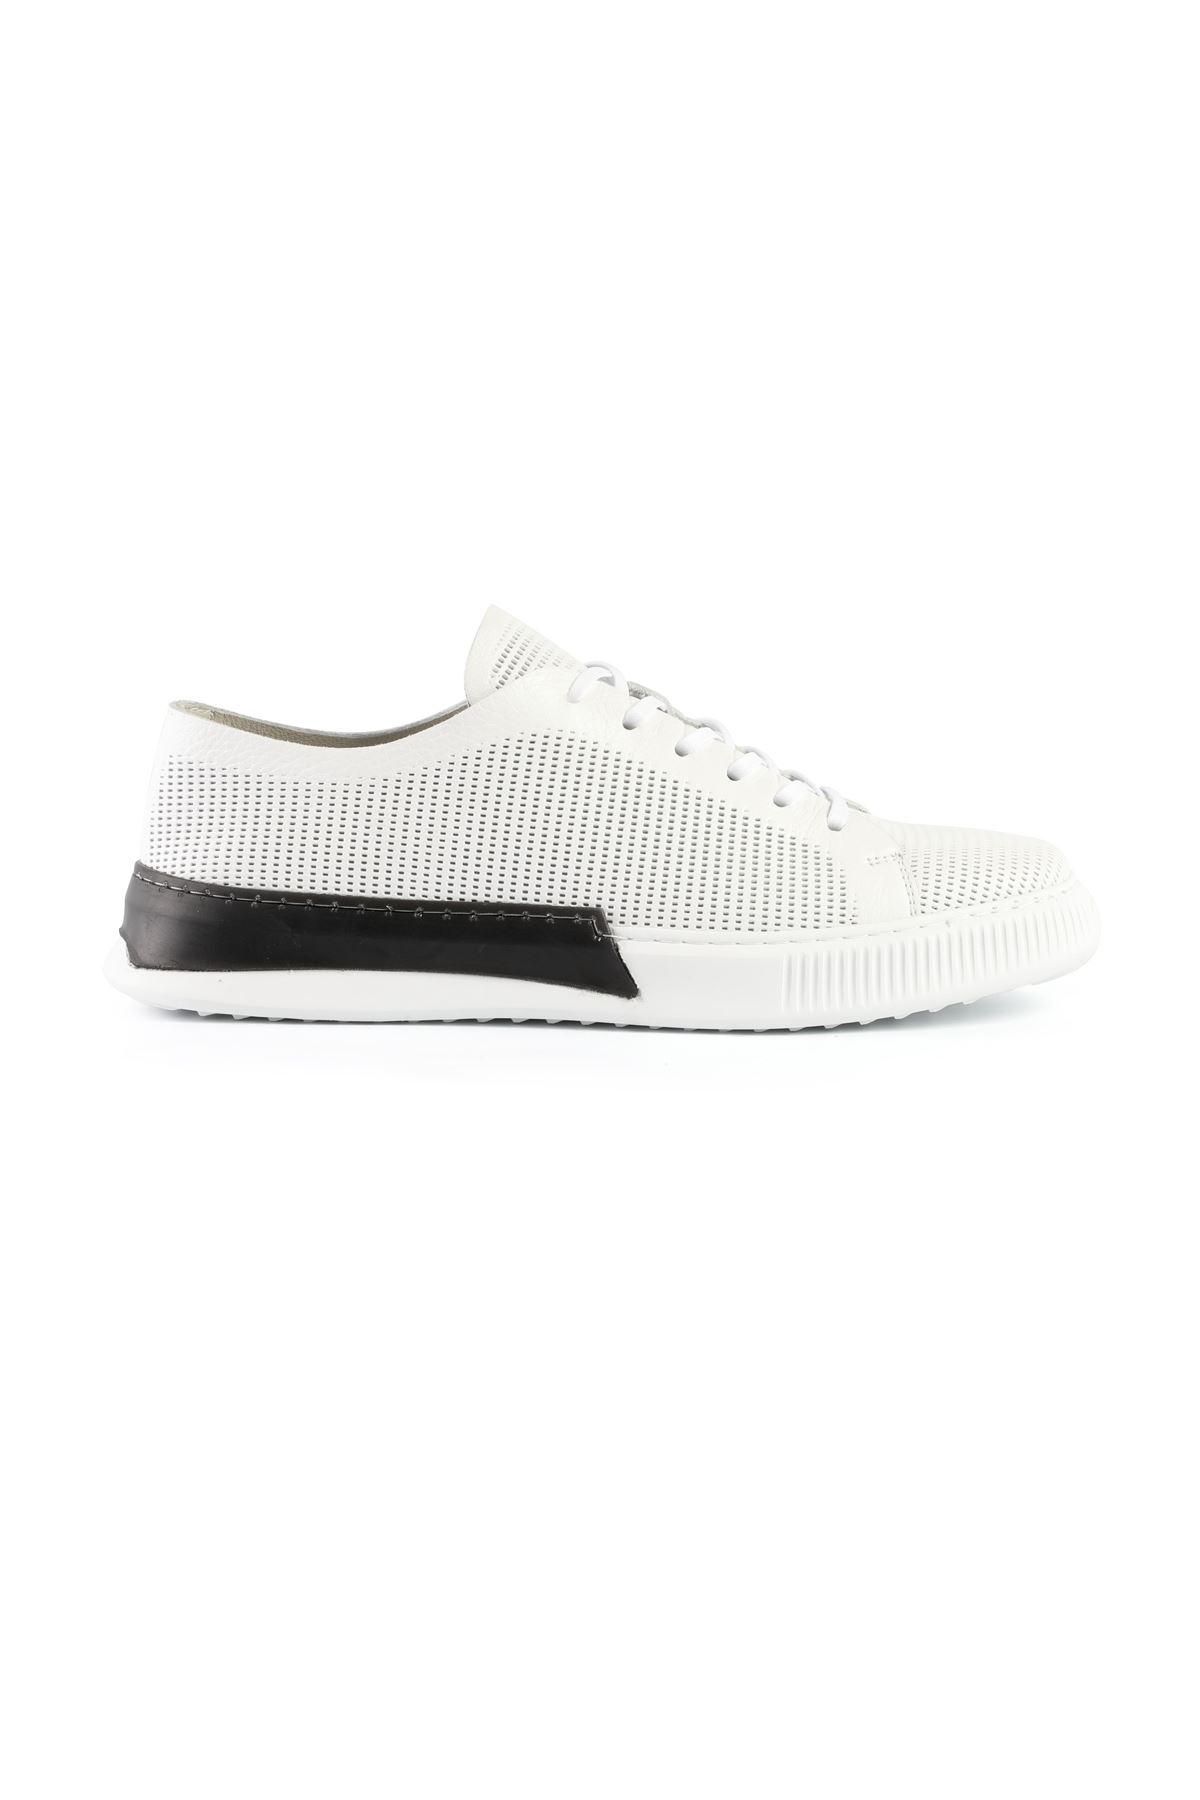 Libero L3411 White Sneaker Shoes